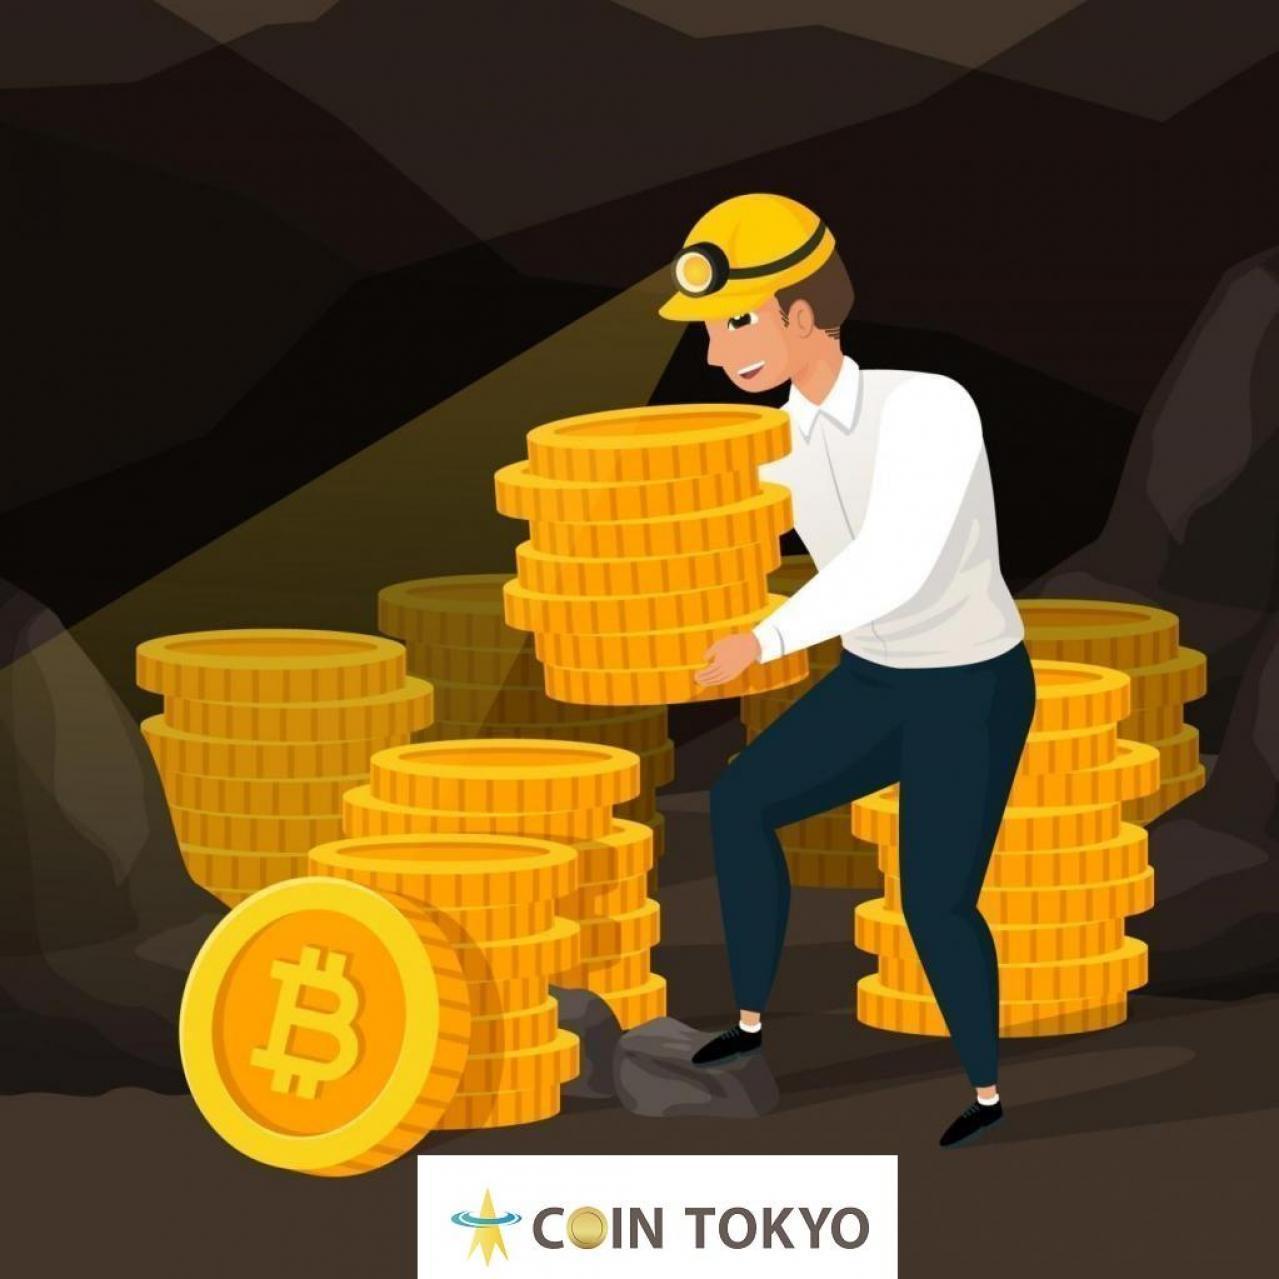 根据挖矿难度指标+虚拟货币新闻网站Coin Tokyo指出，“弱势未成年人的销售”是跌至低于8,000美元比特币的一个因素